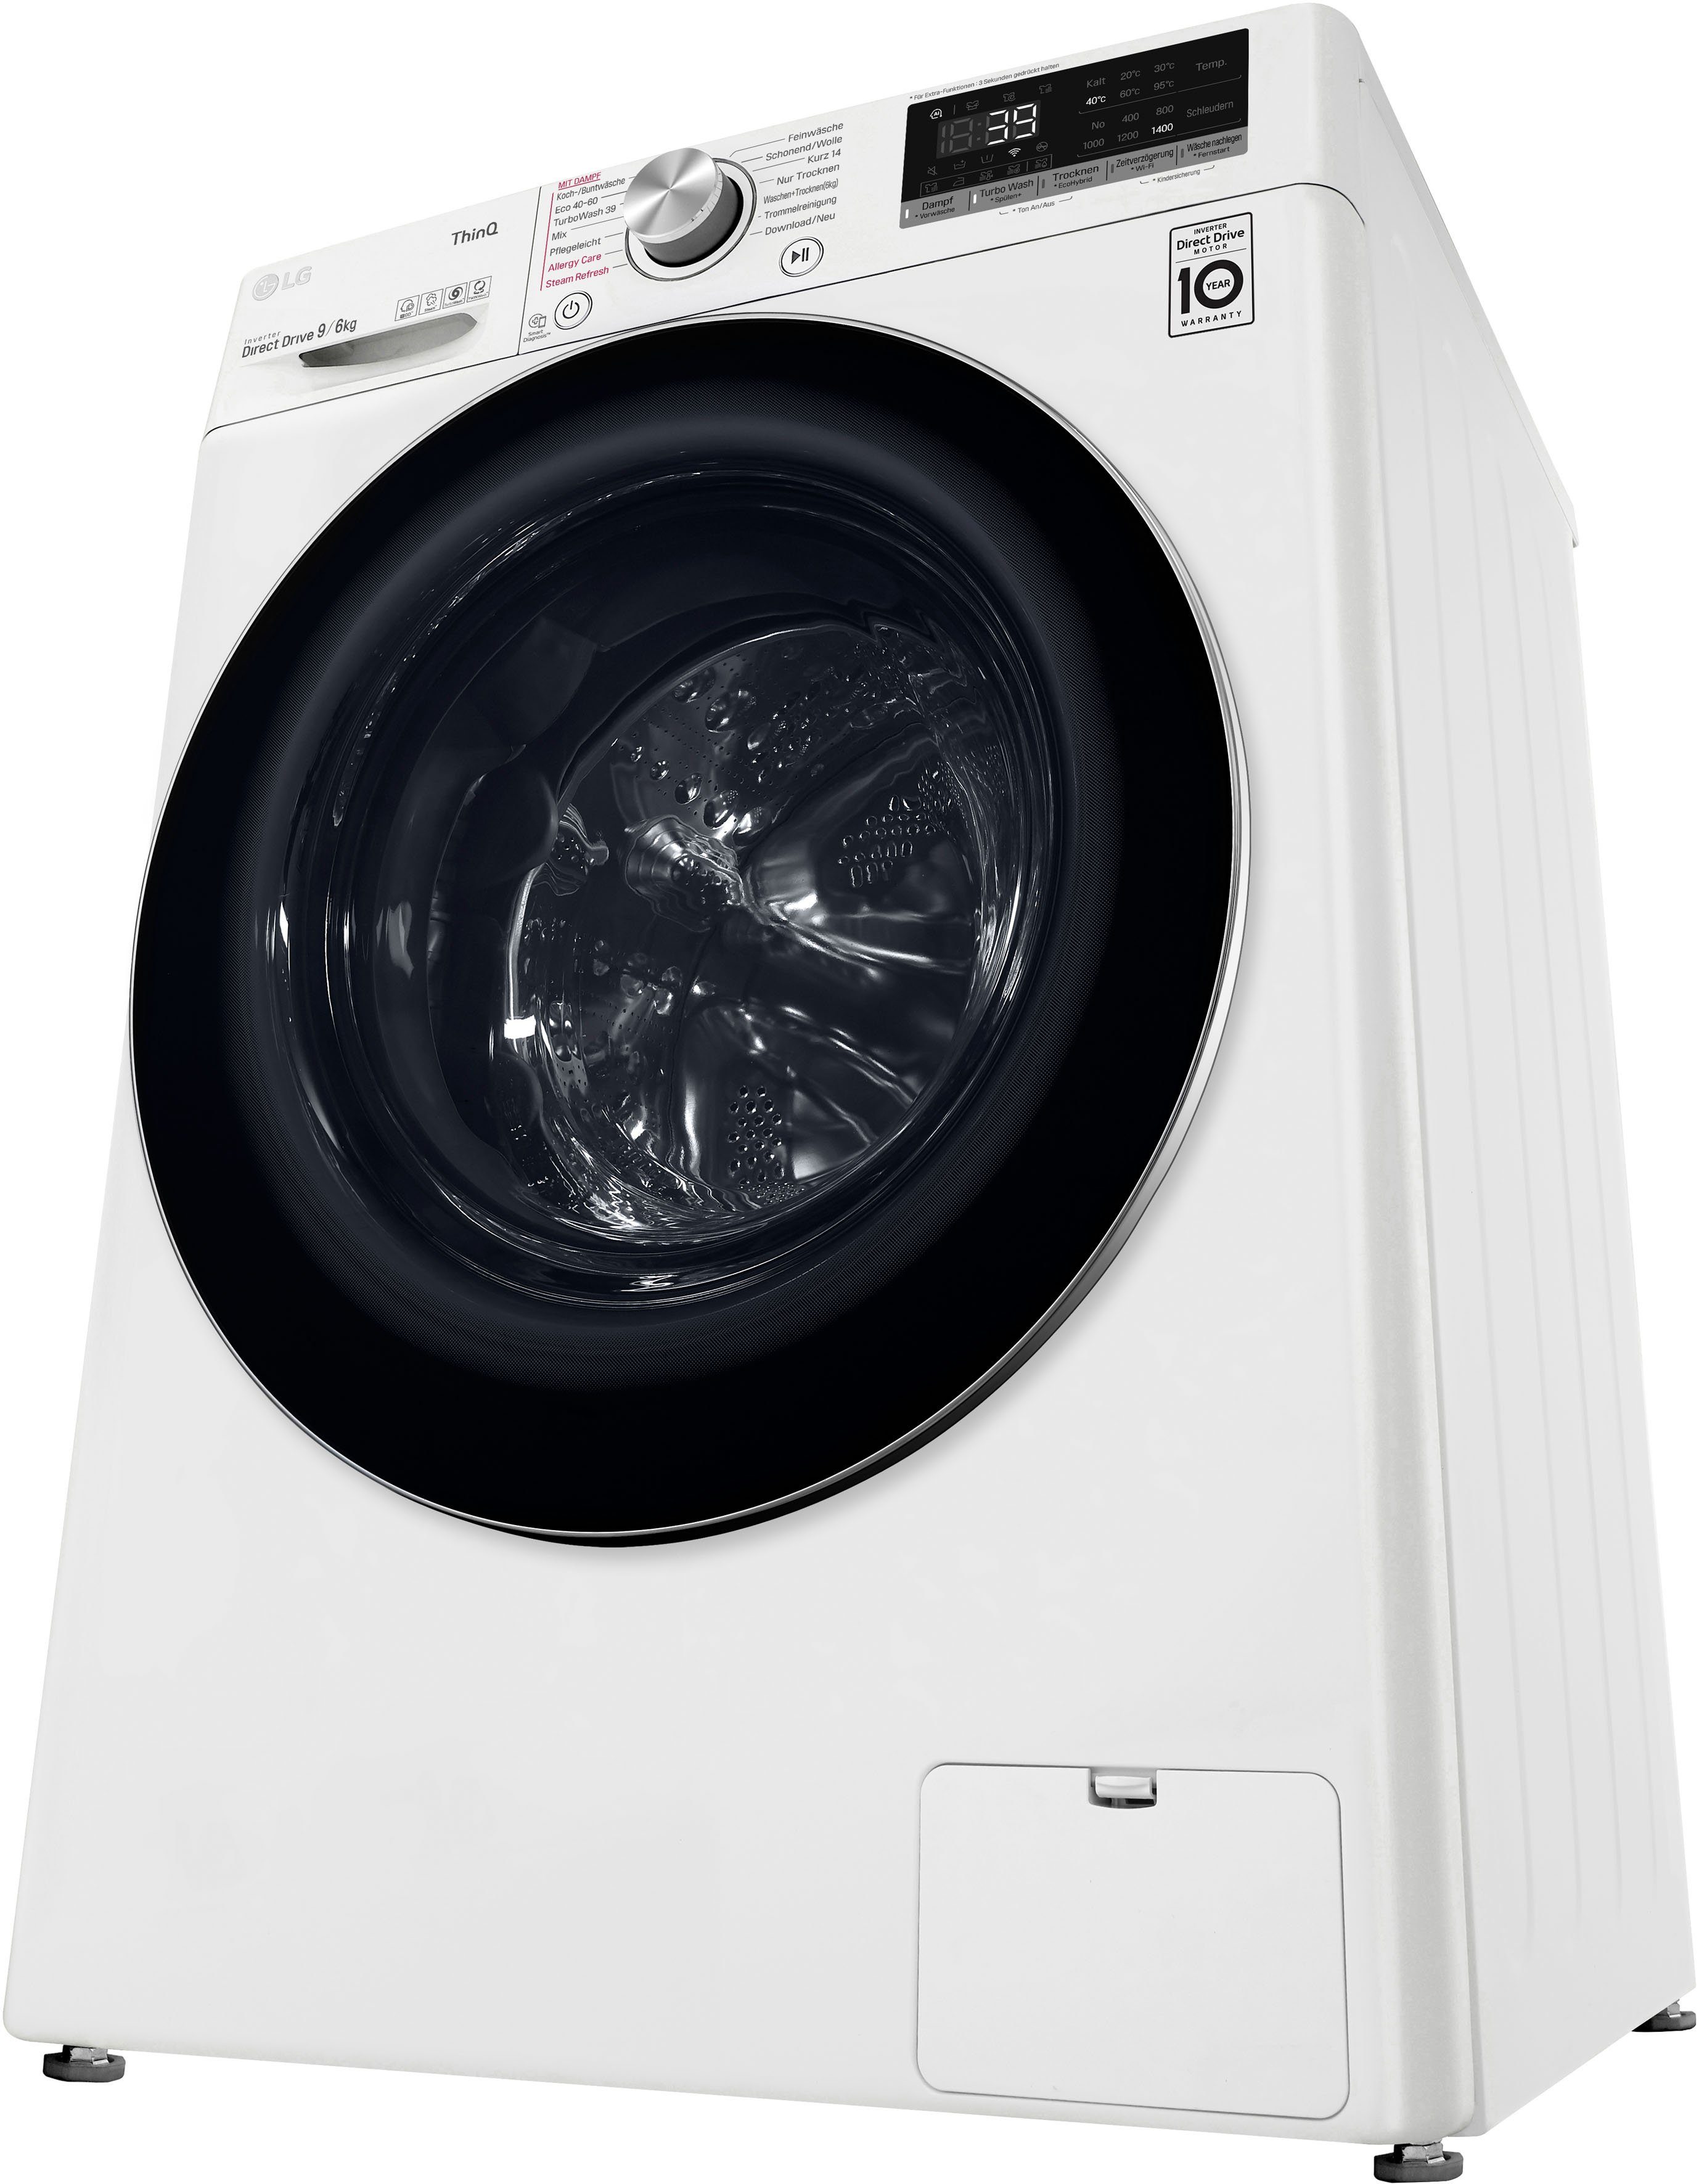 LG Waschtrockner Minuten in kg, U/min, V7WD96H1A, kg, TurboWash® Waschen 39 nur - 9 6 1400